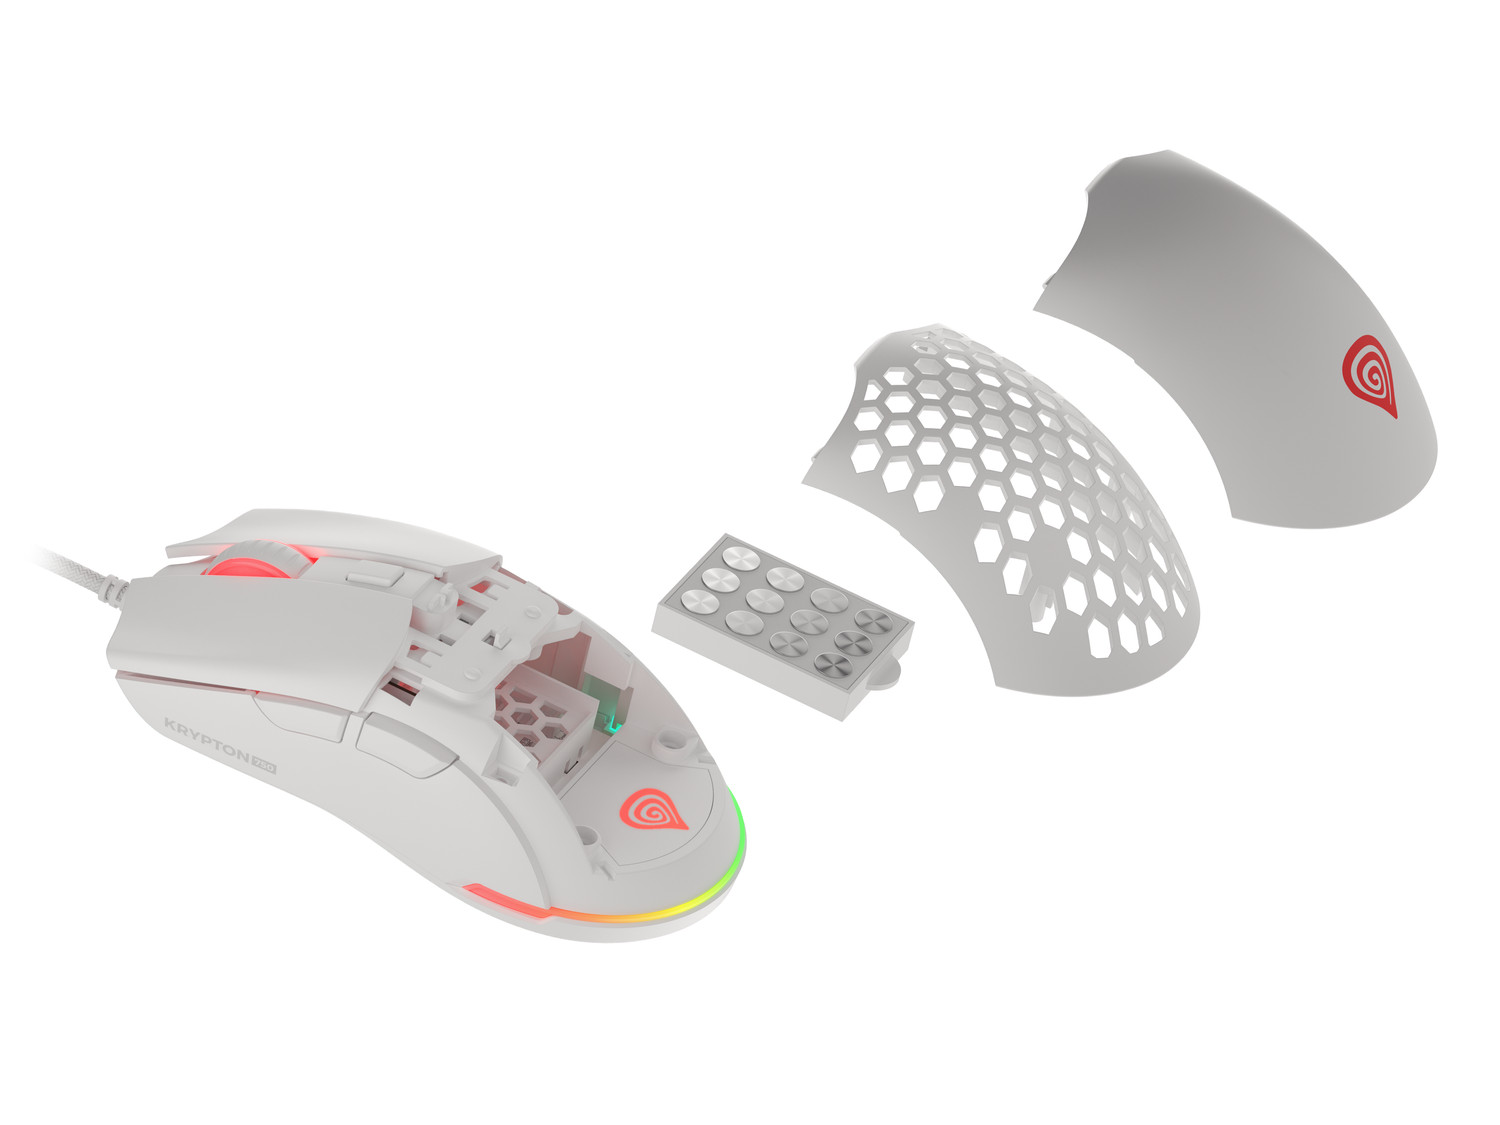 Obrázek Genesis herní optická myš KRYPTON 750/RGB/8000 DPI/Herní/Optická/Drátová USB/Bílá